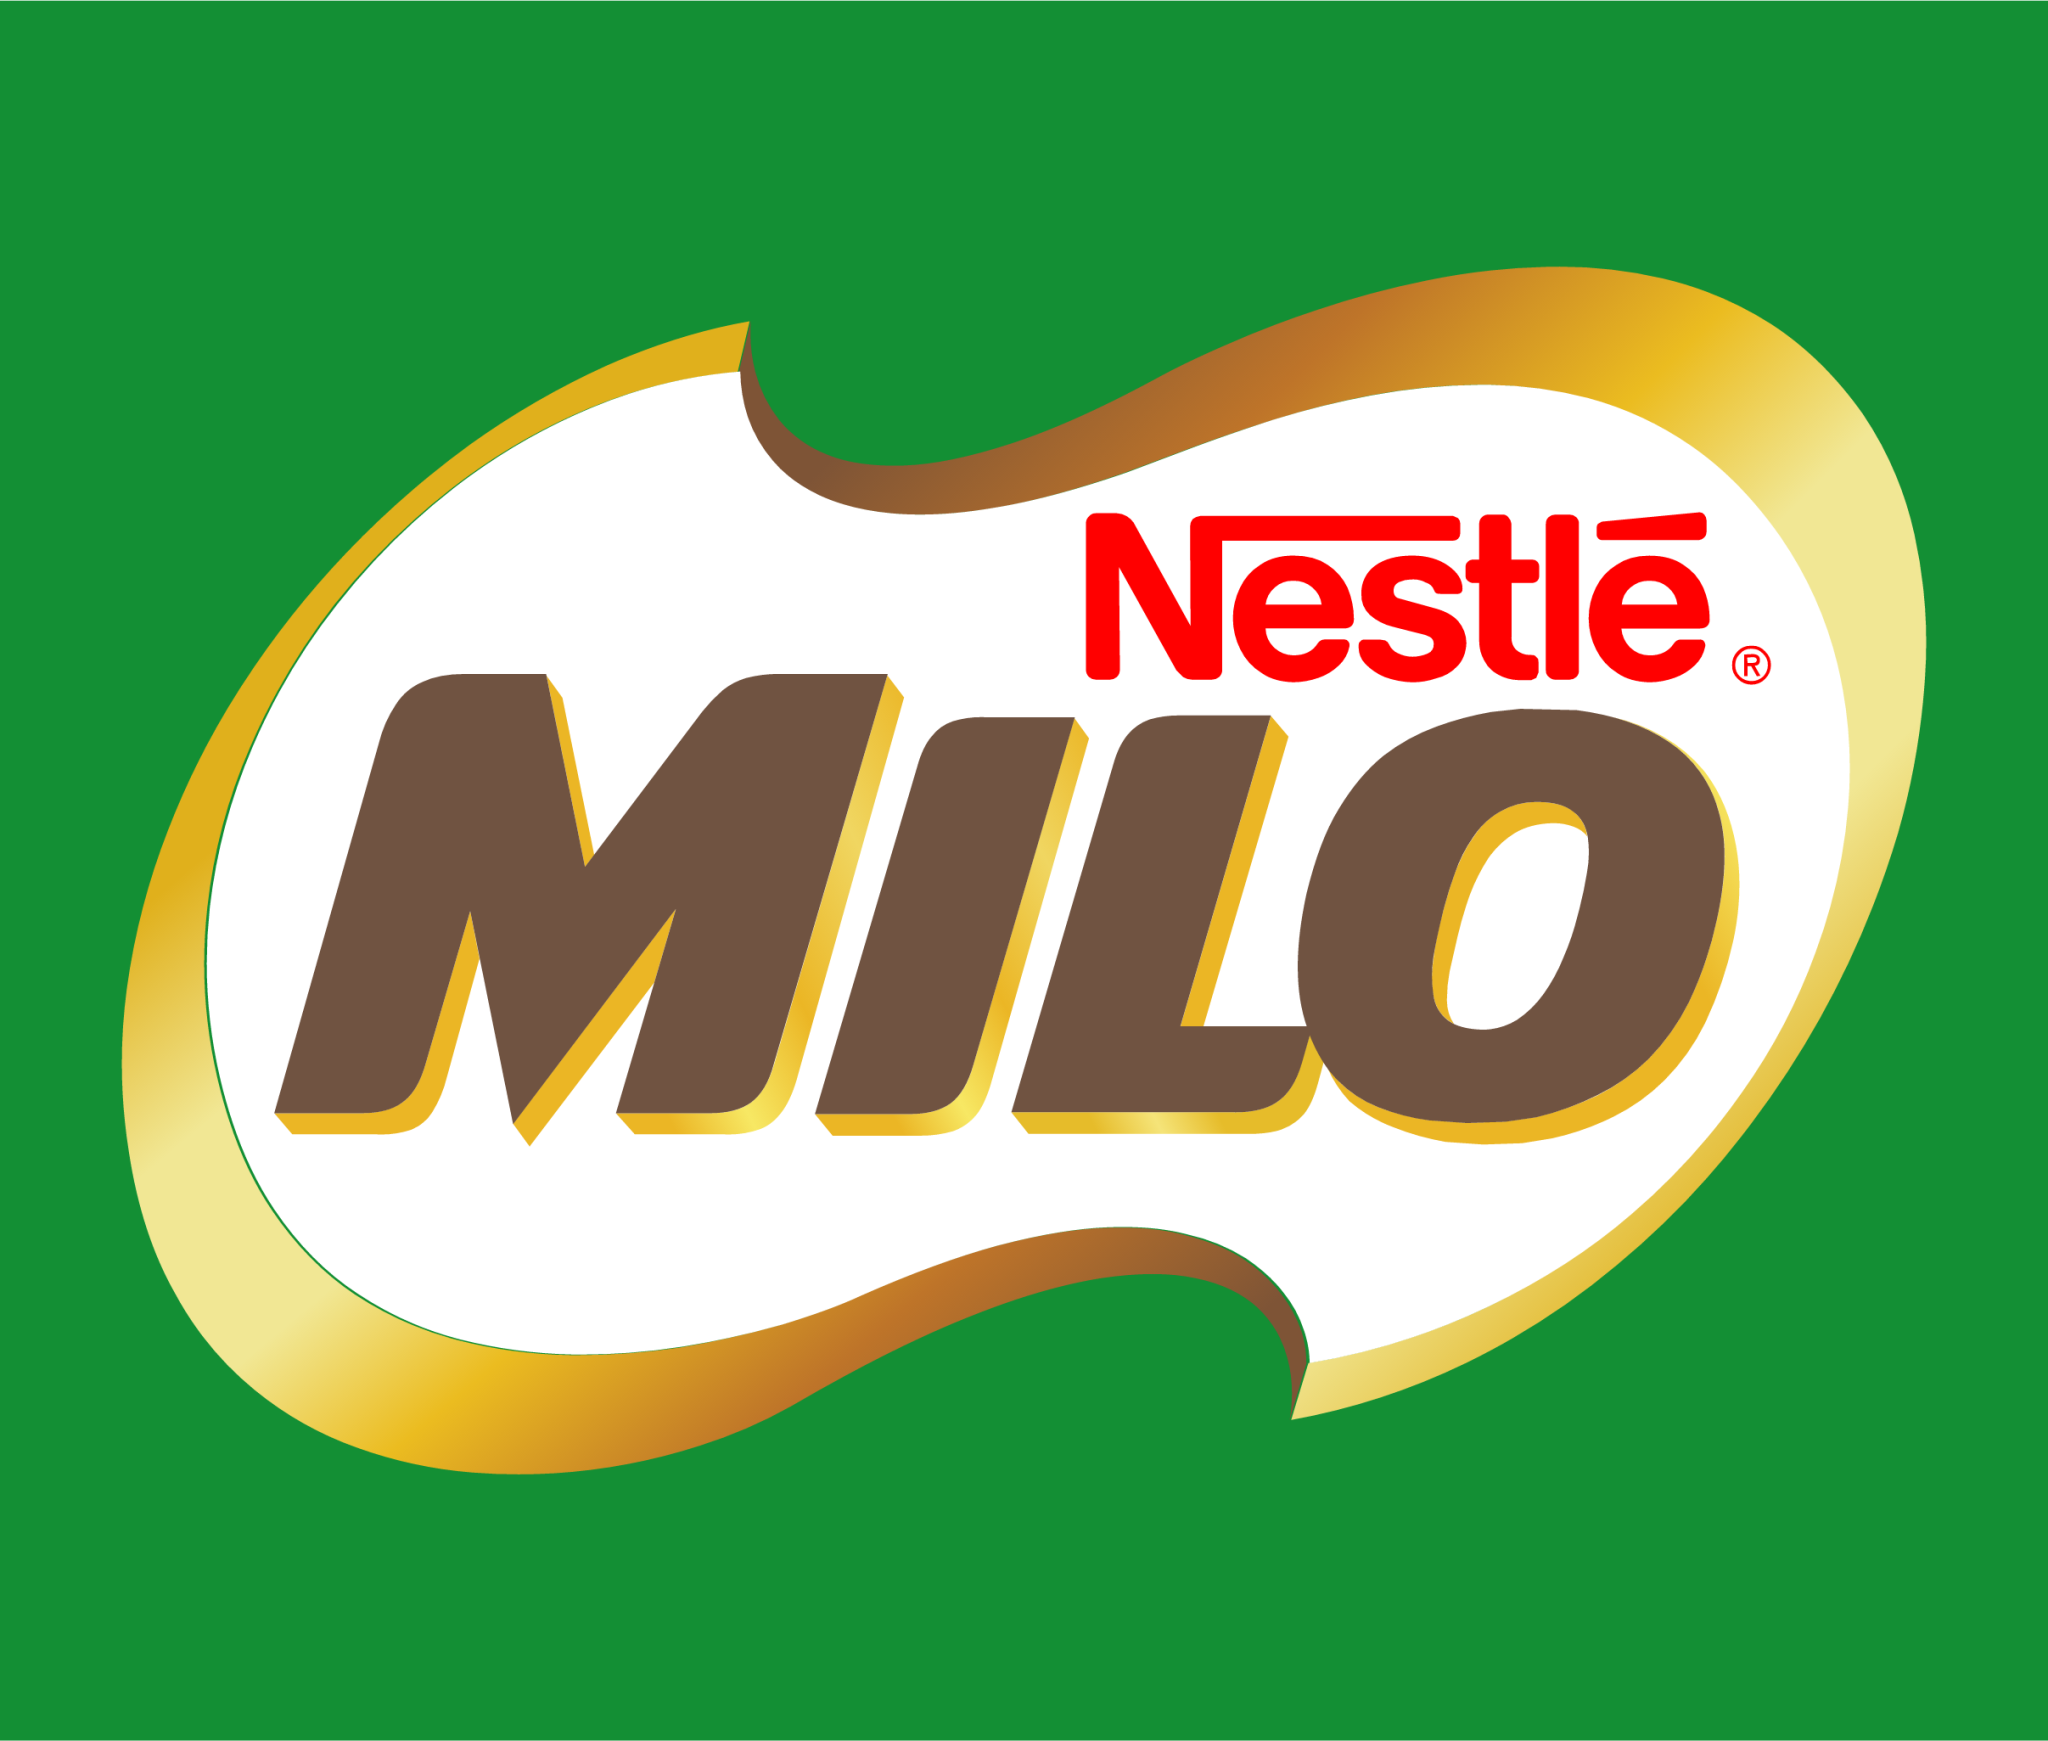 Milo icon